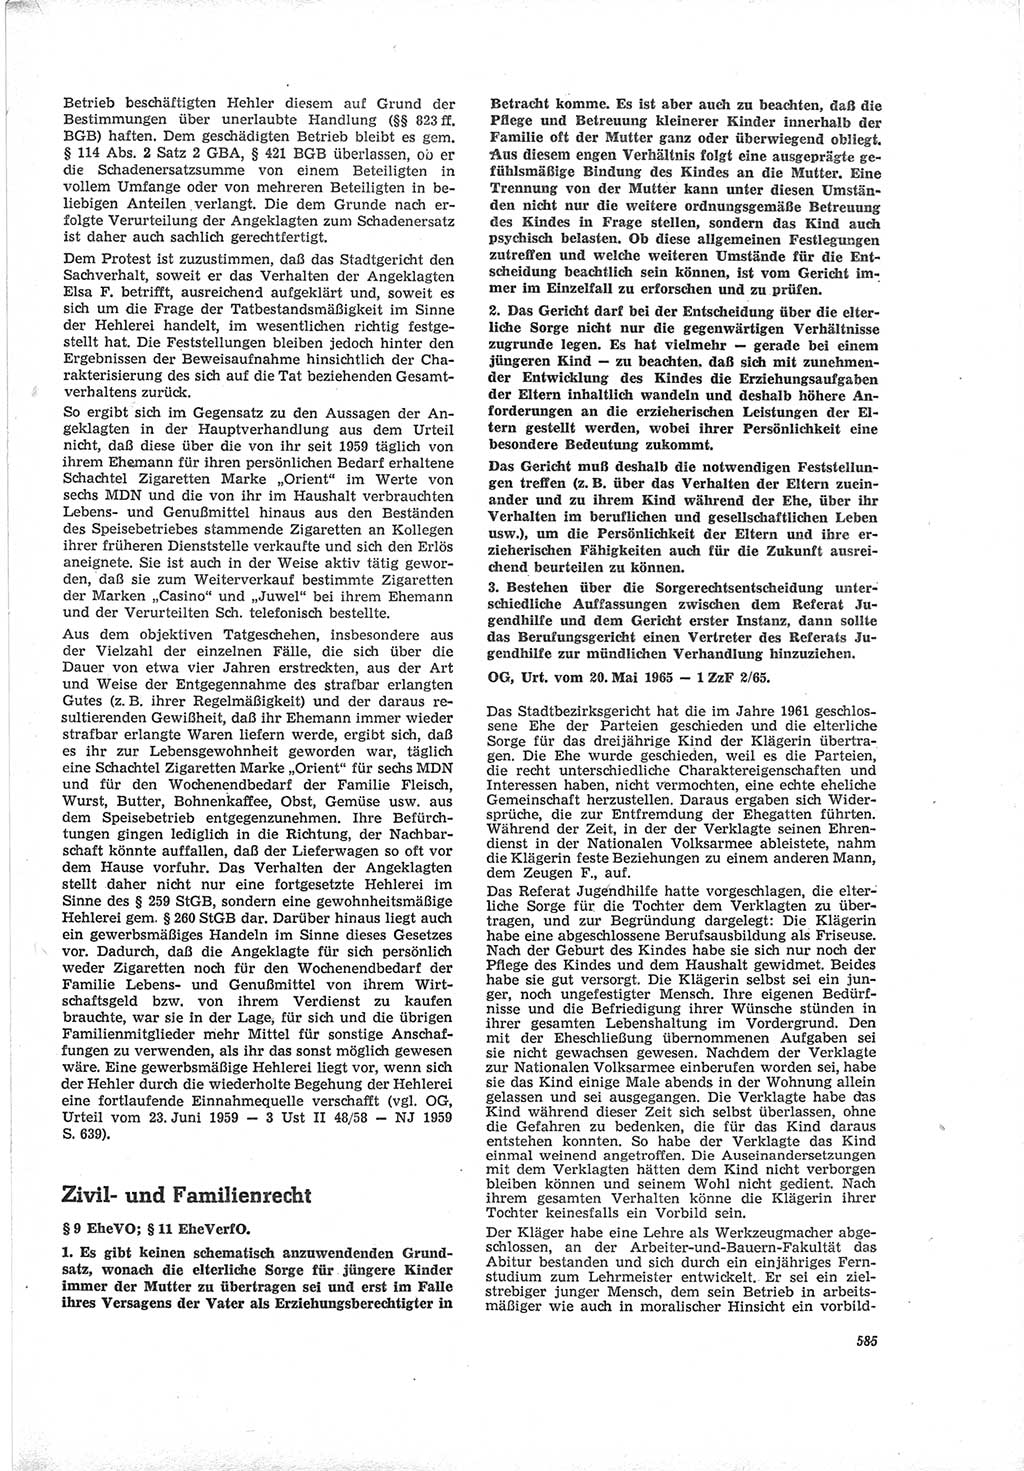 Neue Justiz (NJ), Zeitschrift für Recht und Rechtswissenschaft [Deutsche Demokratische Republik (DDR)], 19. Jahrgang 1965, Seite 585 (NJ DDR 1965, S. 585)